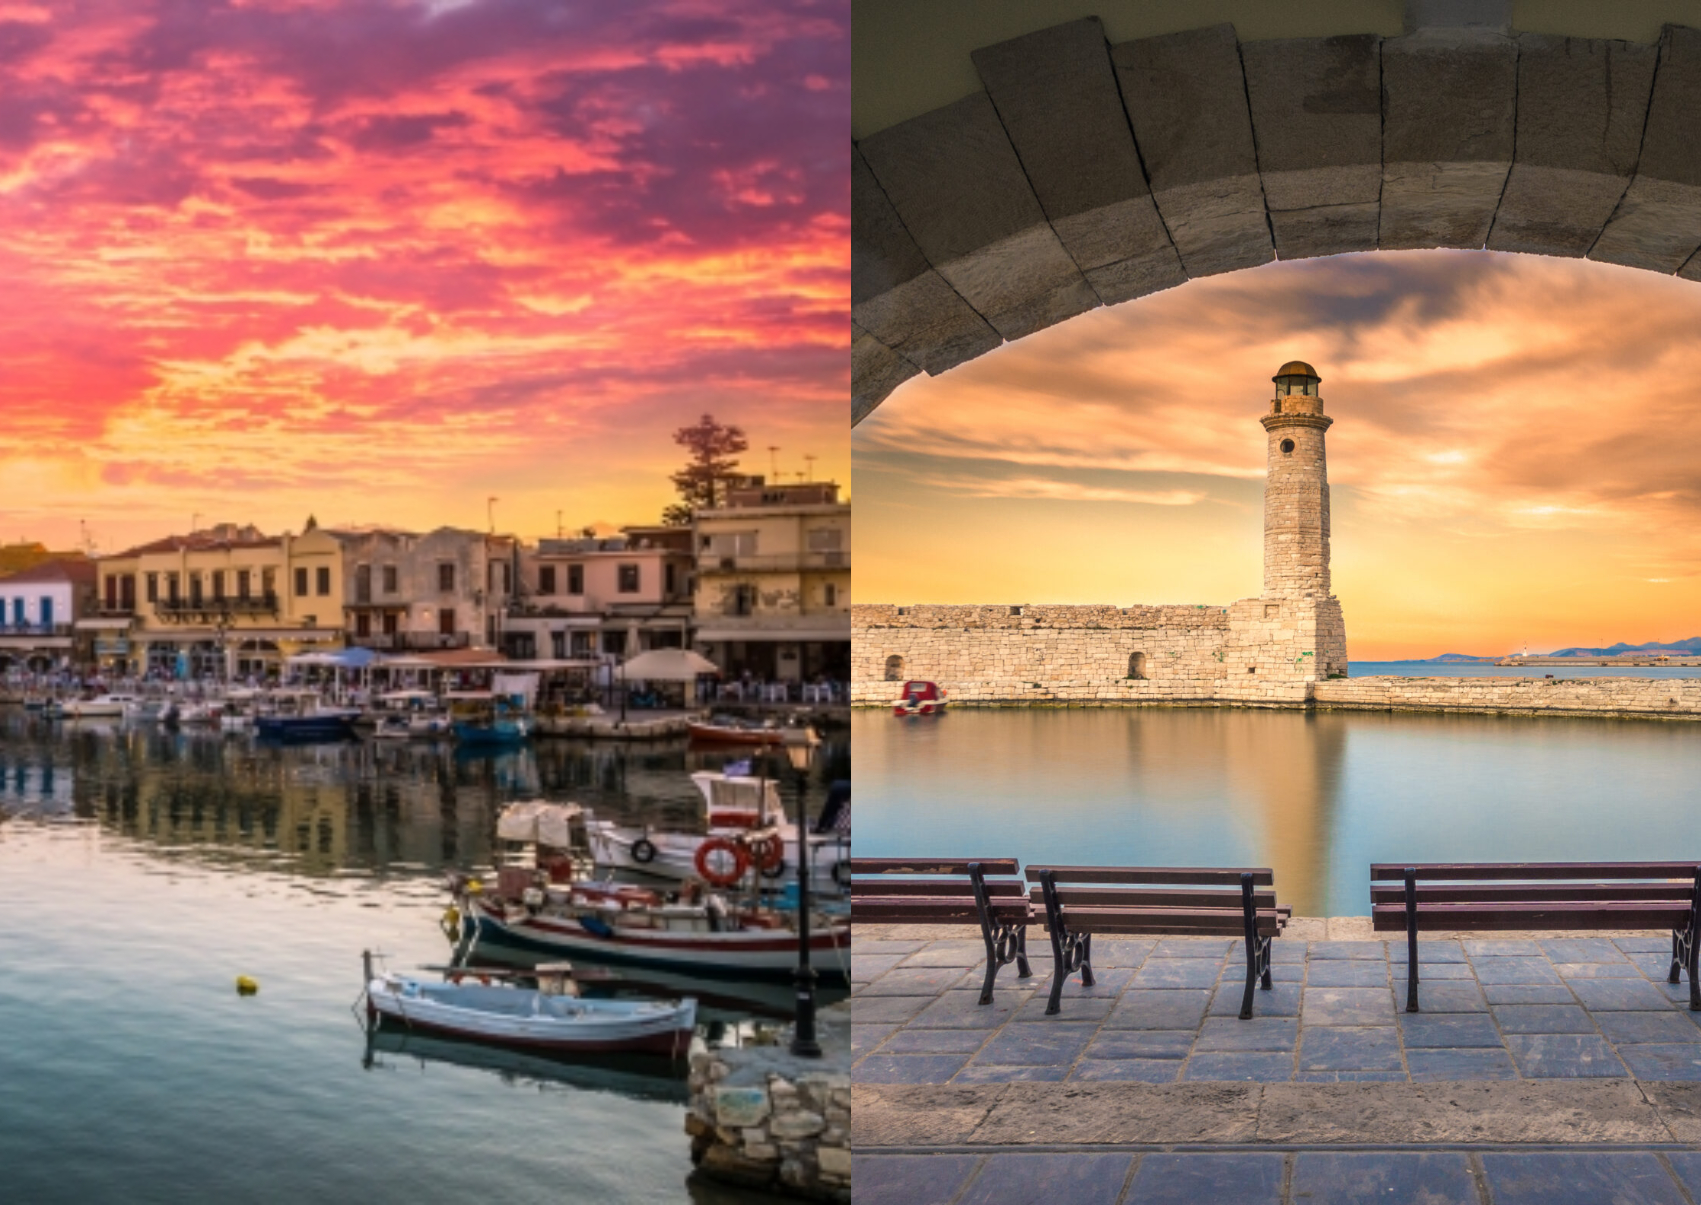 Ρέθυμνο: Ονειρεμένες διακοπές στην μαγευτική πόλη της Κρήτης με τους κρυμμένους θησαυρούς και την πλούσια ιστορία